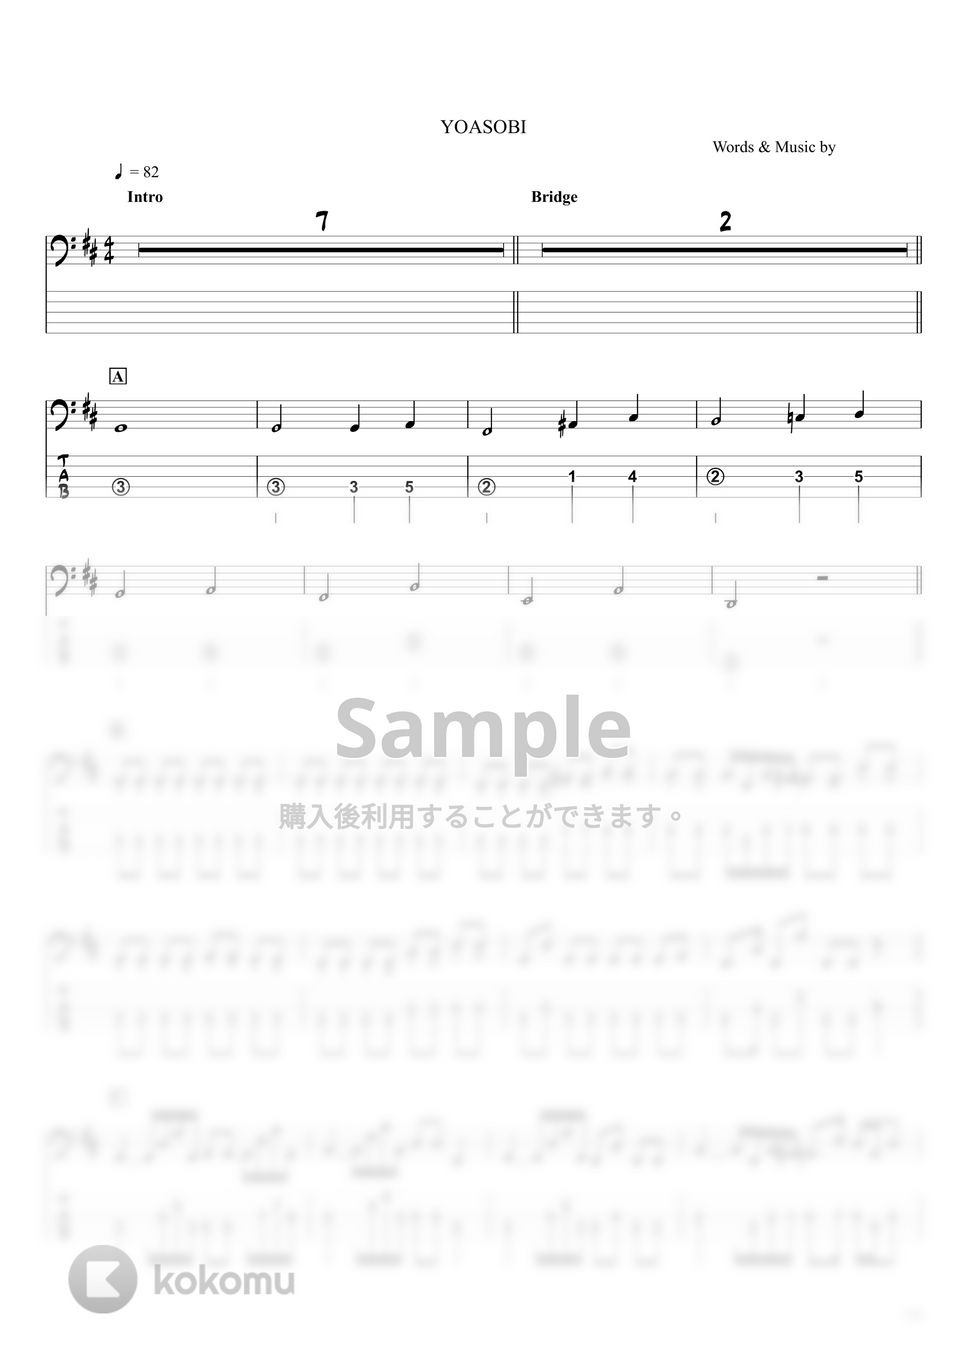 YOASOBI - アンコール (ベースTAB譜 / ☆5弦ベース対応) by swbass